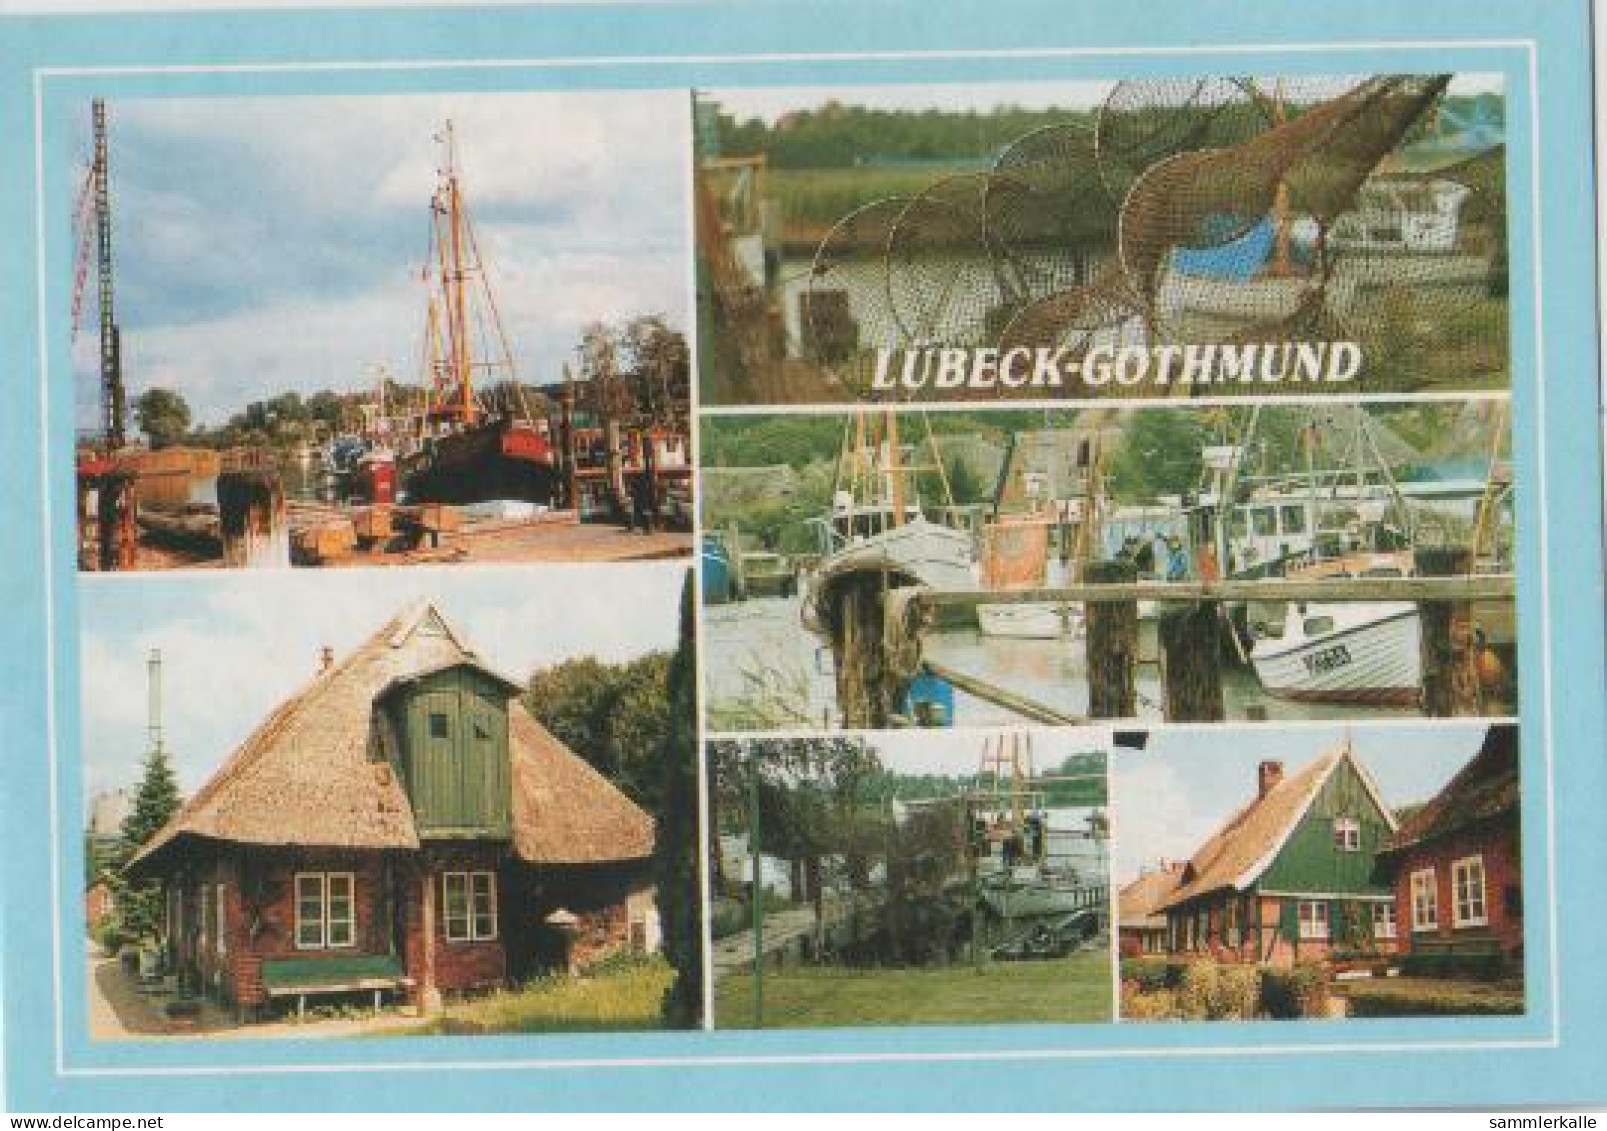 12764 - Lübeck-Gothmund - Ca. 1995 - Luebeck